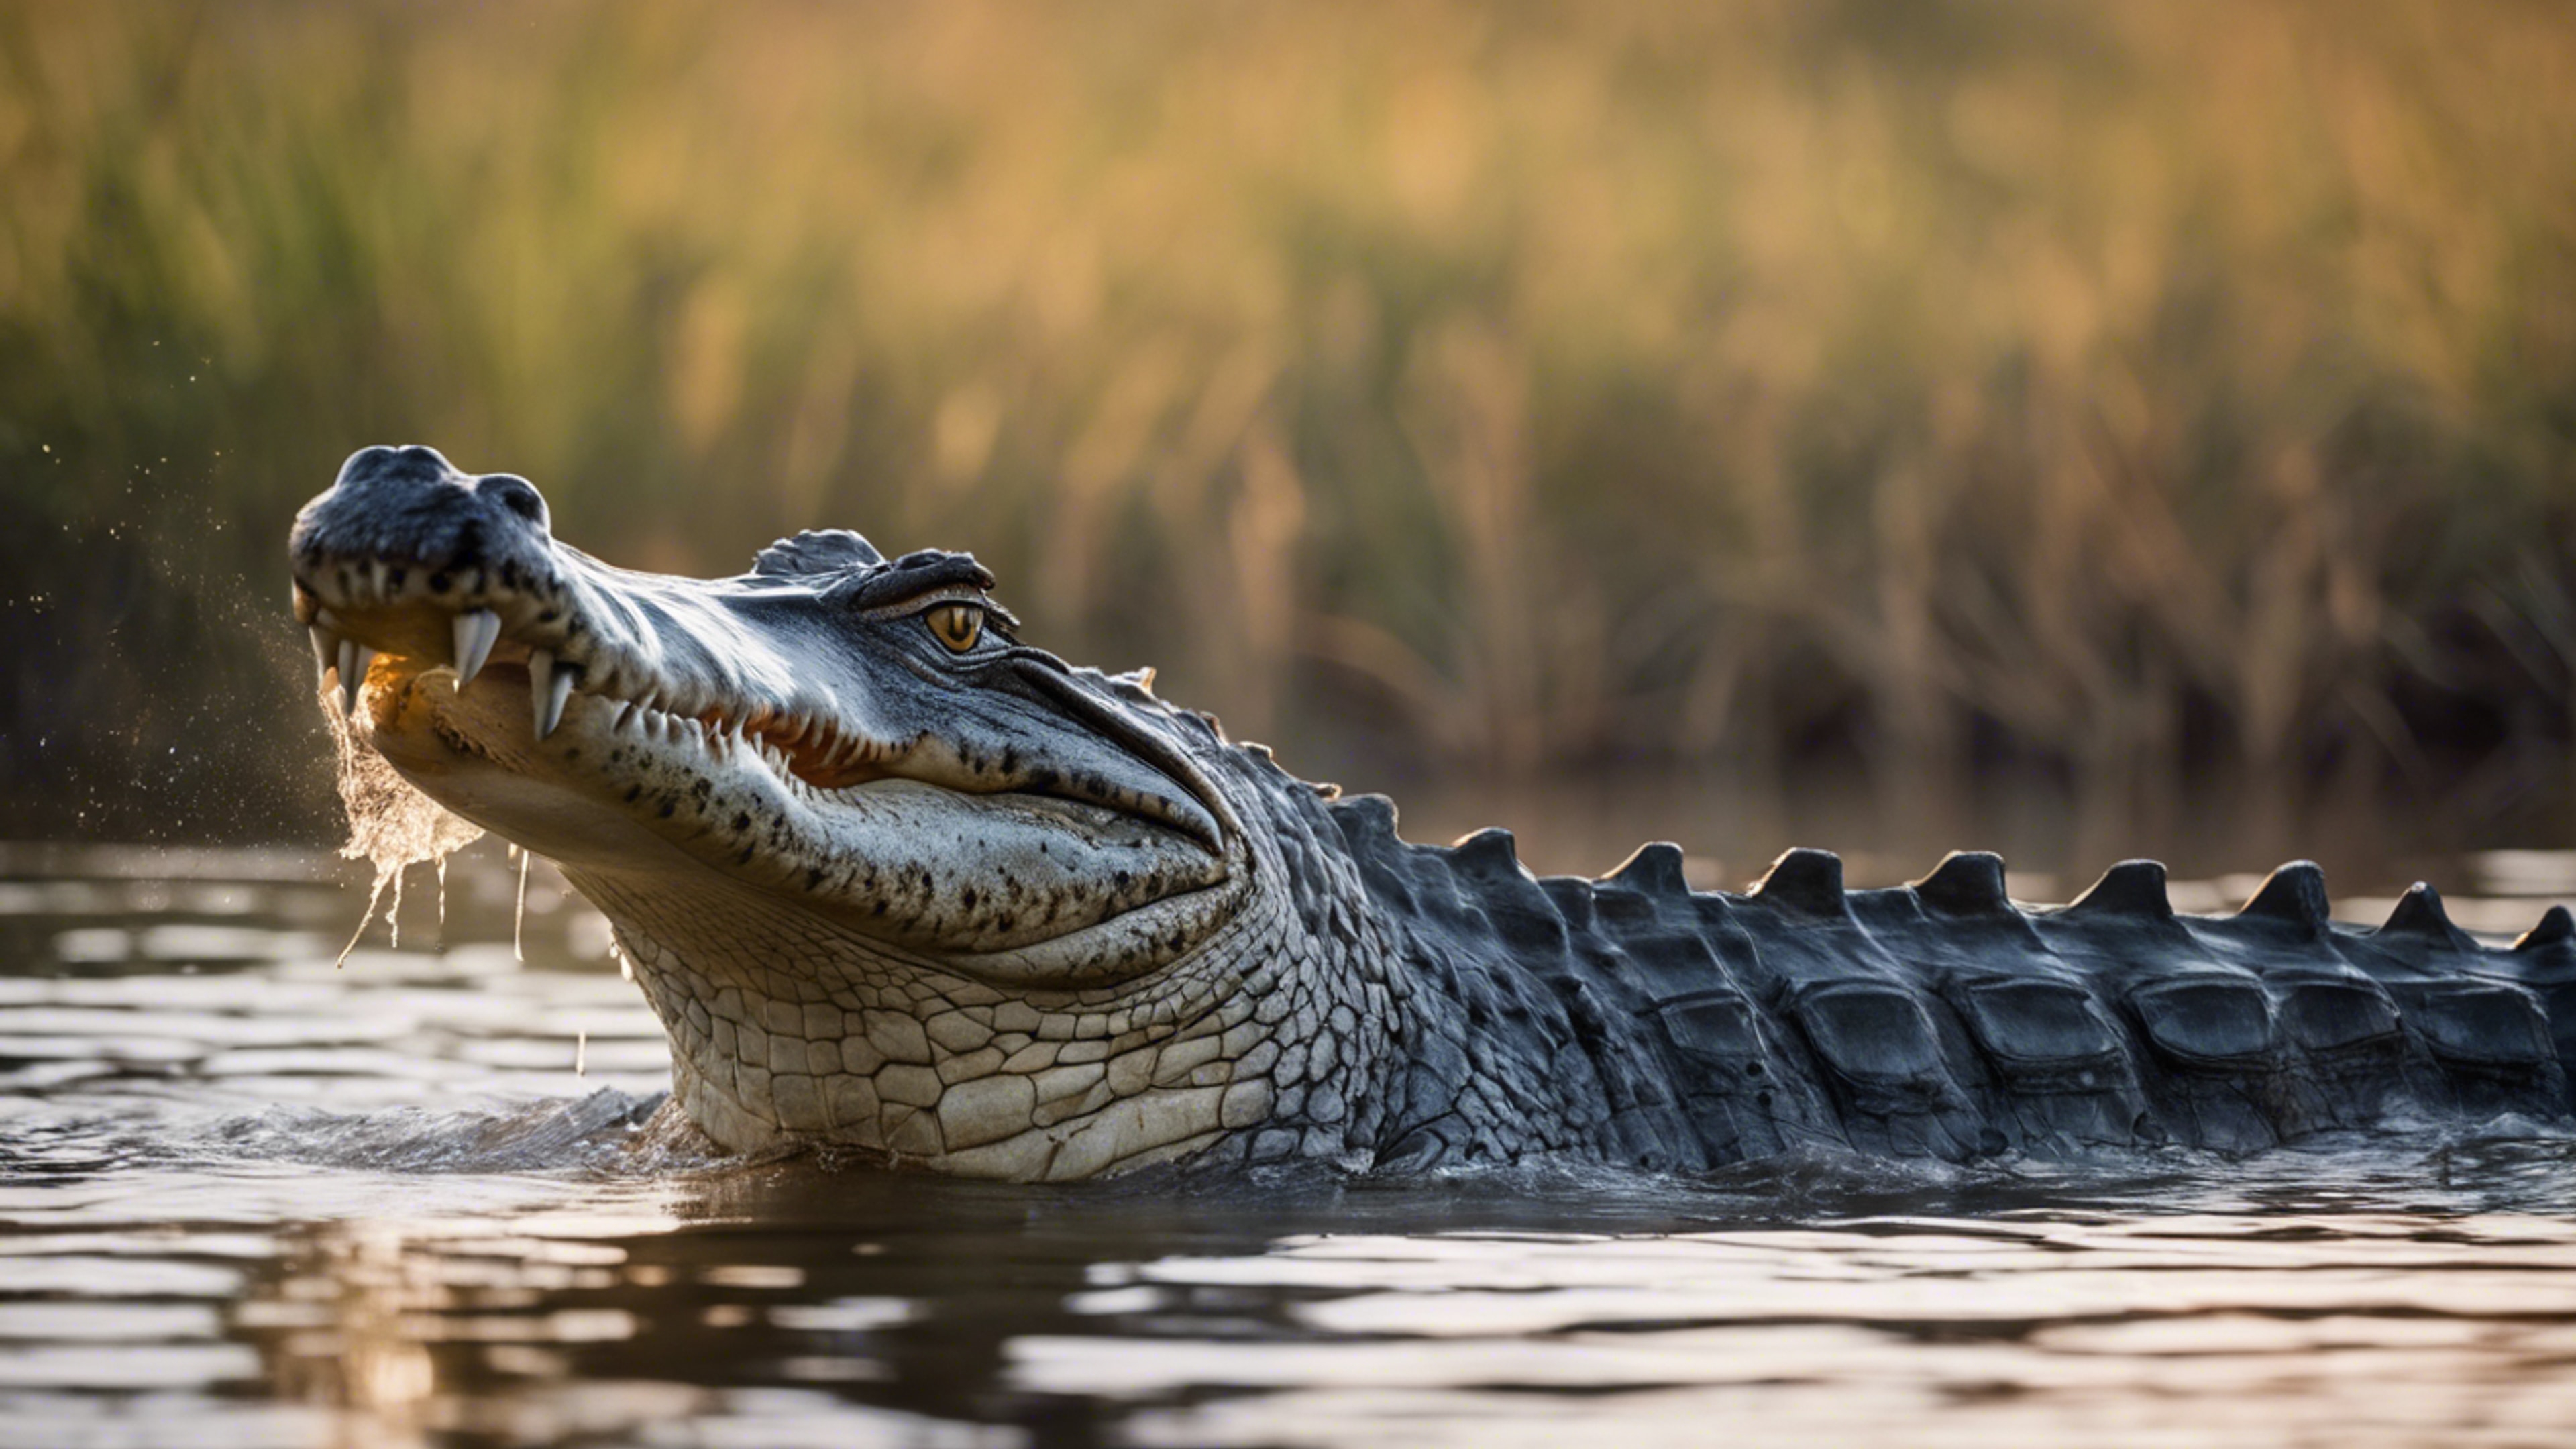 A glorious scene of a crocodile in the heart of the Okavango Delta. Wallpaper[926204686e5b483ca4a6]